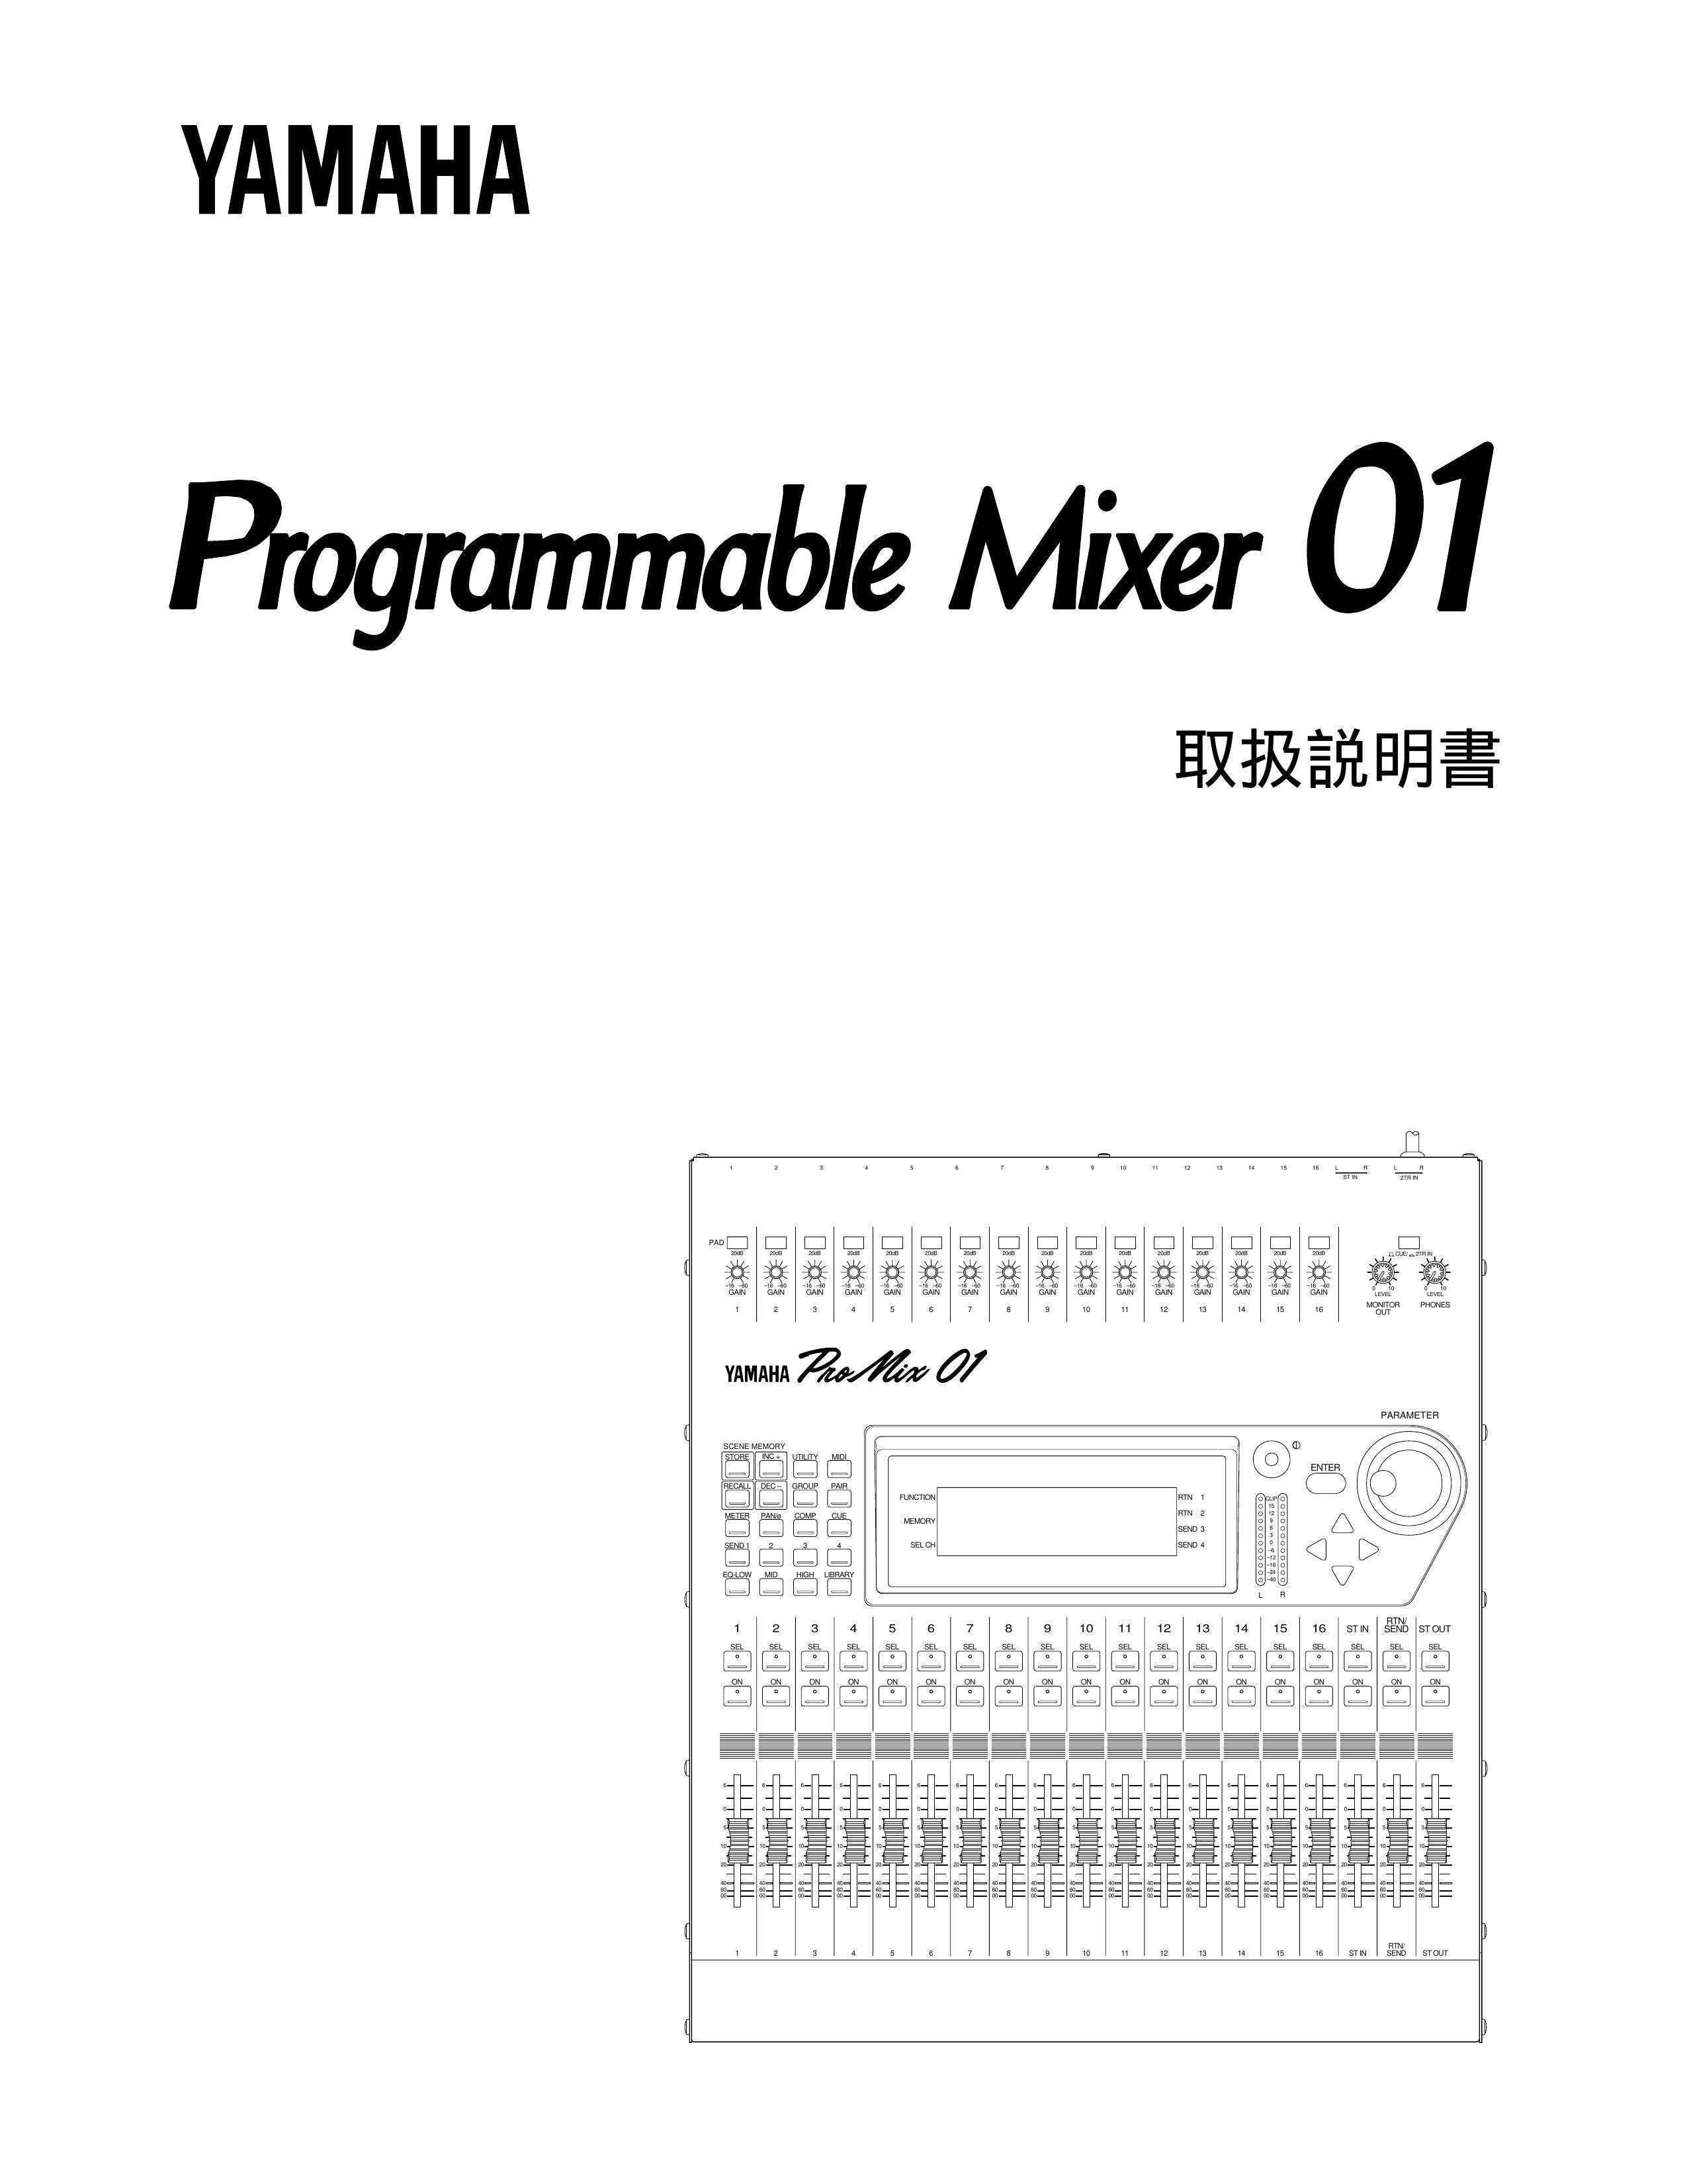 Yamaha 01 Music Mixer User Manual